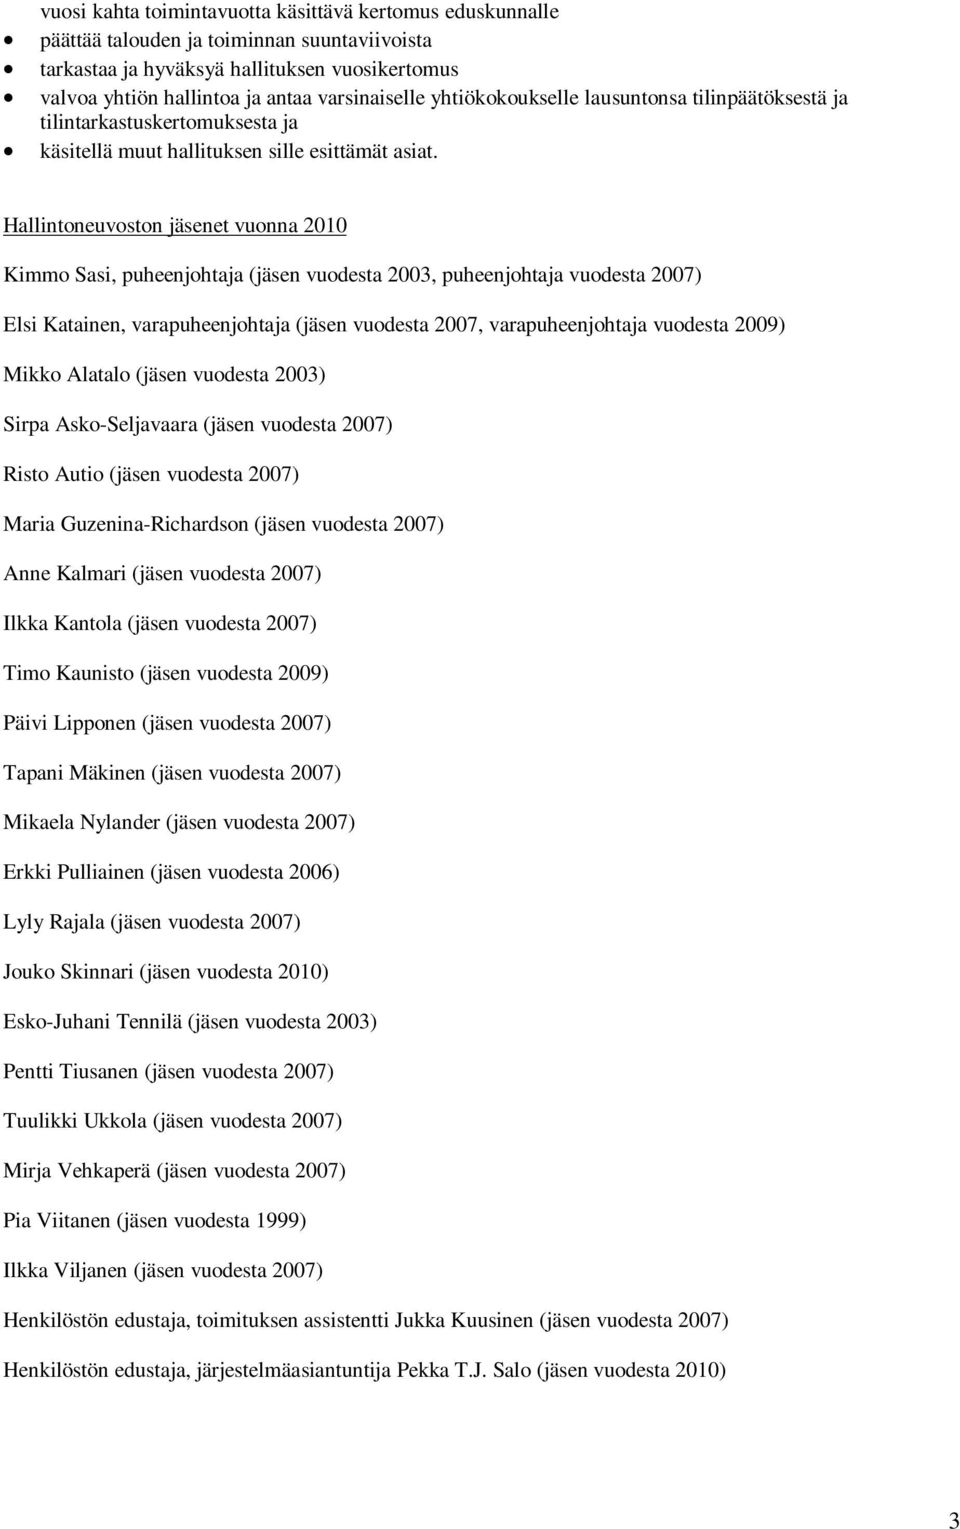 Hallintoneuvoston jäsenet vuonna 2010 Kimmo Sasi, puheenjohtaja (jäsen vuodesta 2003, puheenjohtaja vuodesta 2007) Elsi Katainen, varapuheenjohtaja (jäsen vuodesta 2007, varapuheenjohtaja vuodesta